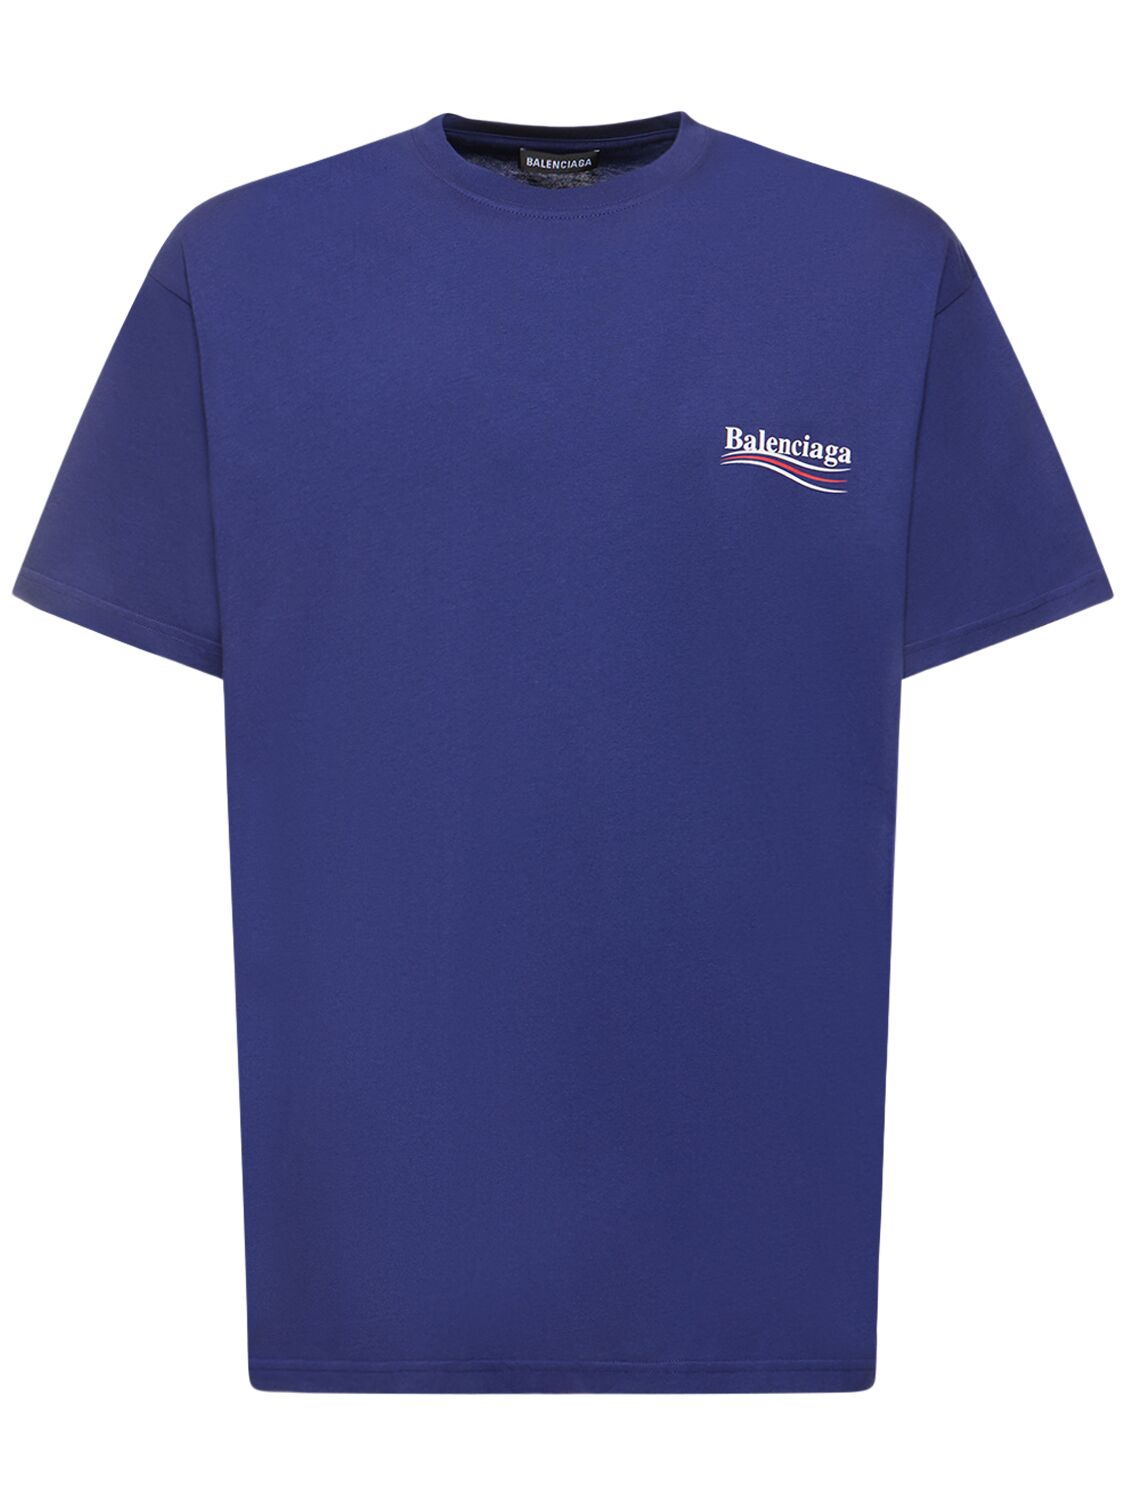 Balenciaga Political Logo Cotton T-shirt In Pacific Blue